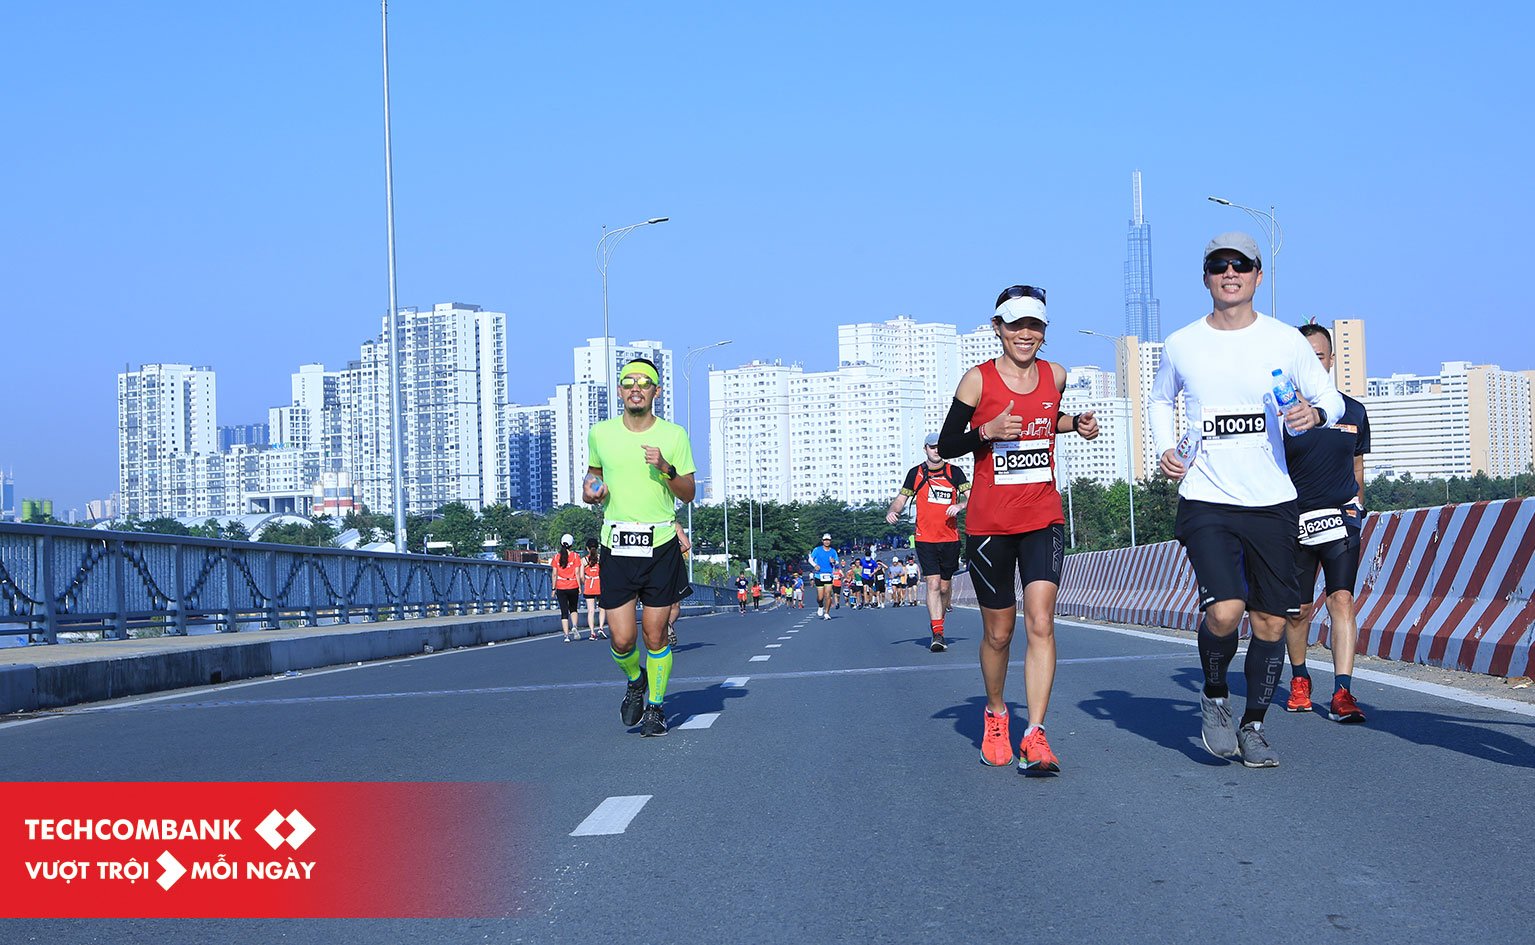 Kí sự HCMC International Marathon 2019 - Lần 2 chinh phục Full Marathon trên đường nhựa - ki su hcmc marathon 2019 4